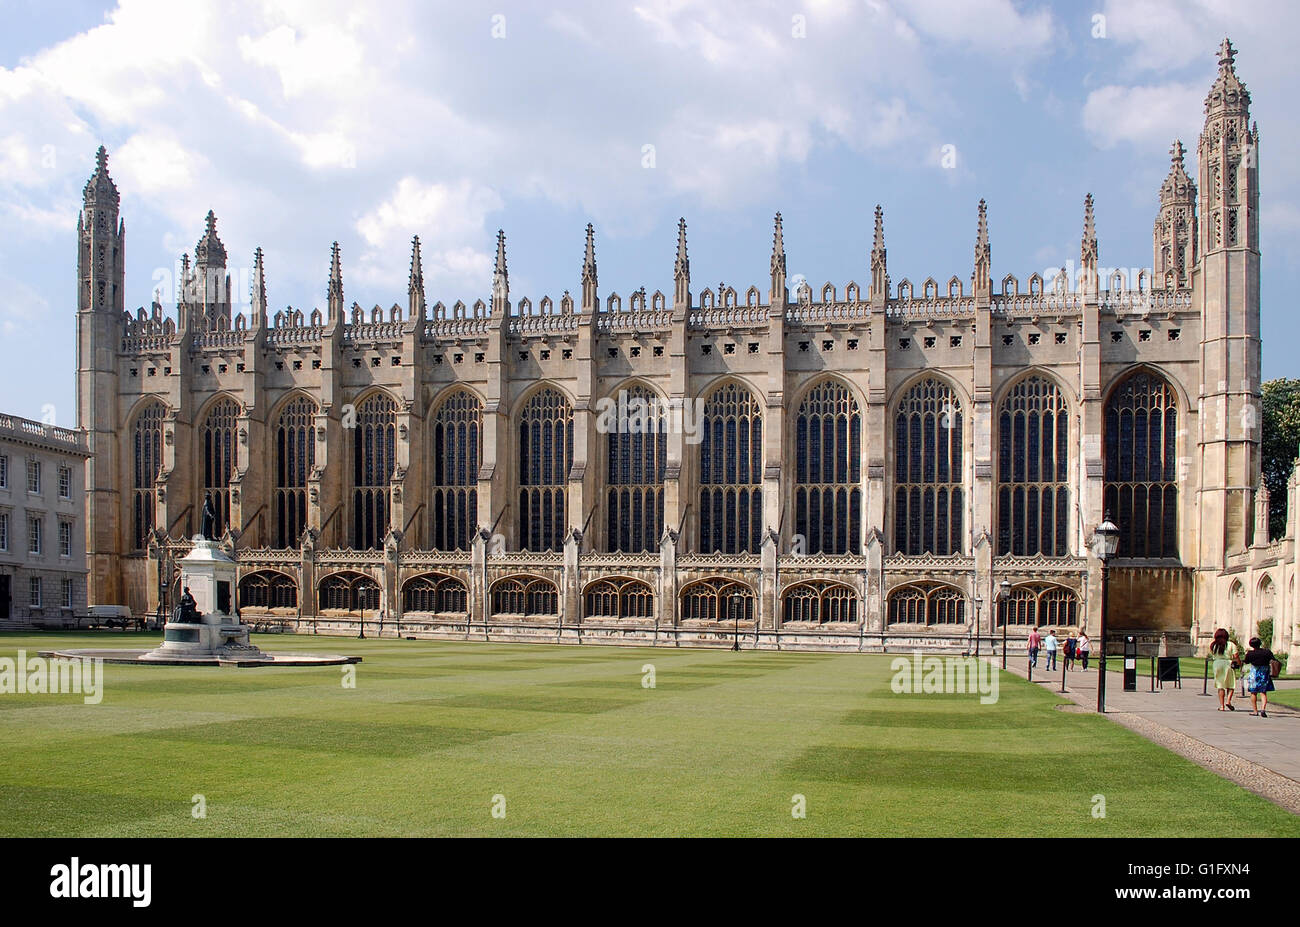 Kings College, Cambridge University Stock Photo